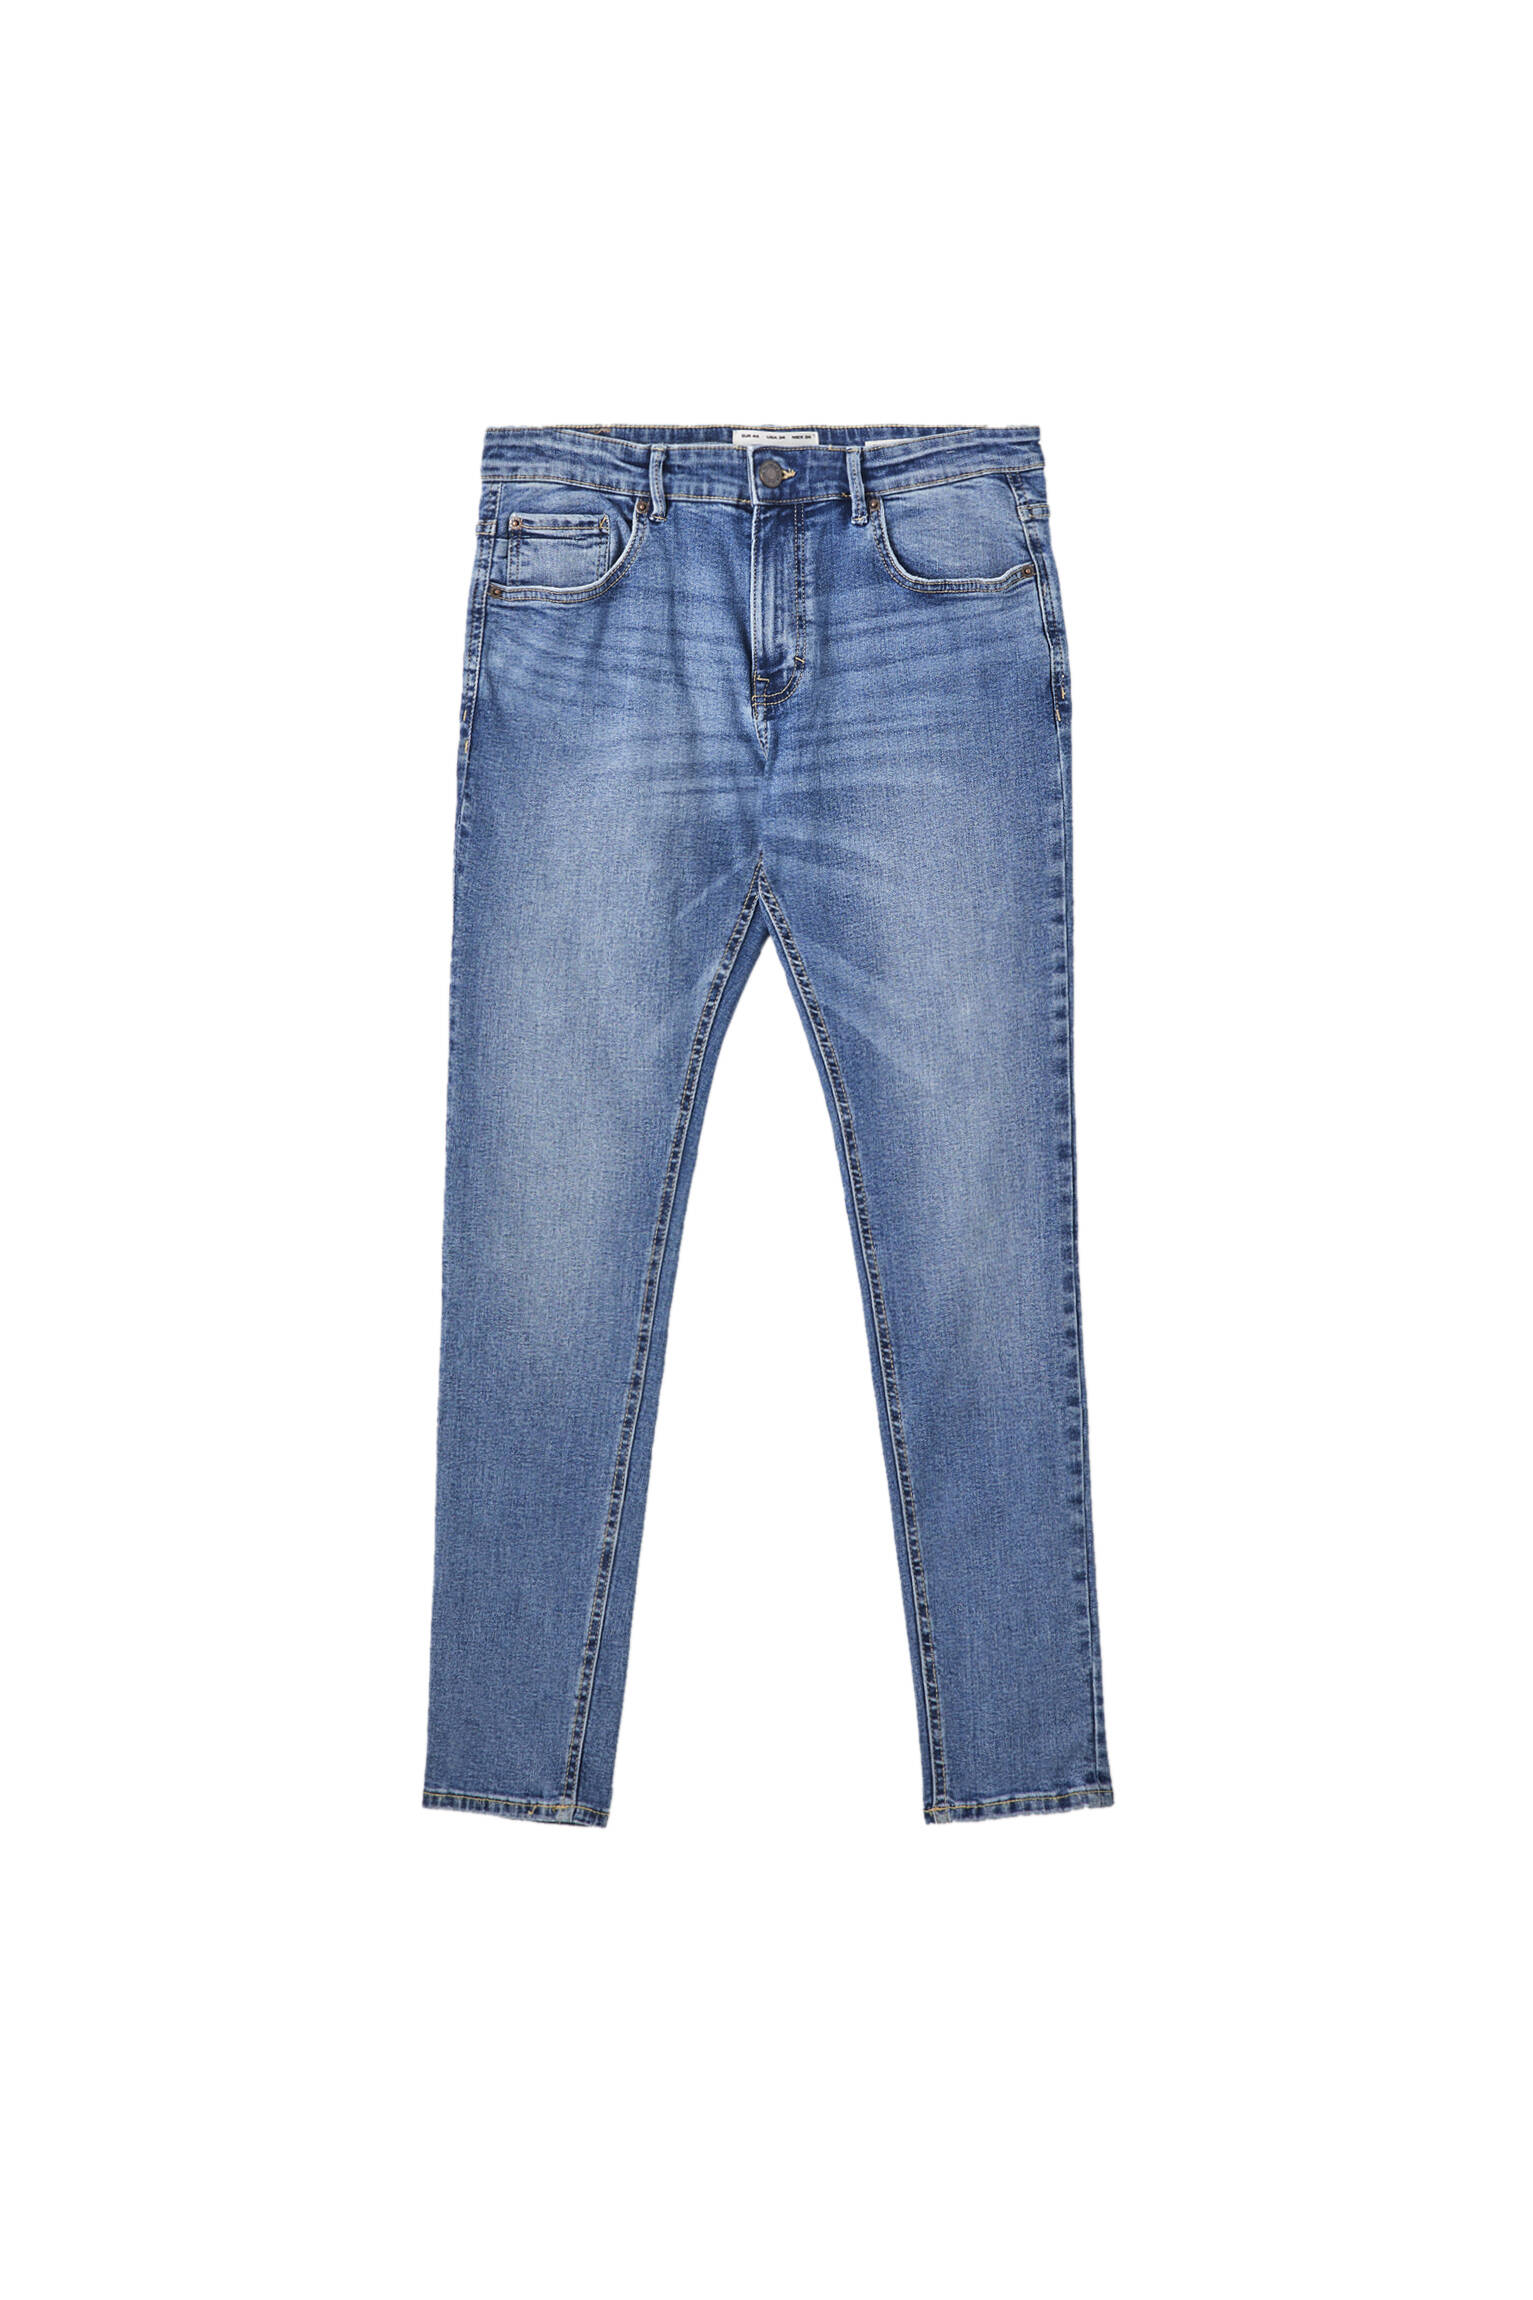 ВЫЦВЕТШИЙ СИНИЙ Синие джинсы суперскинни с эффектом потертости Pull & Bear